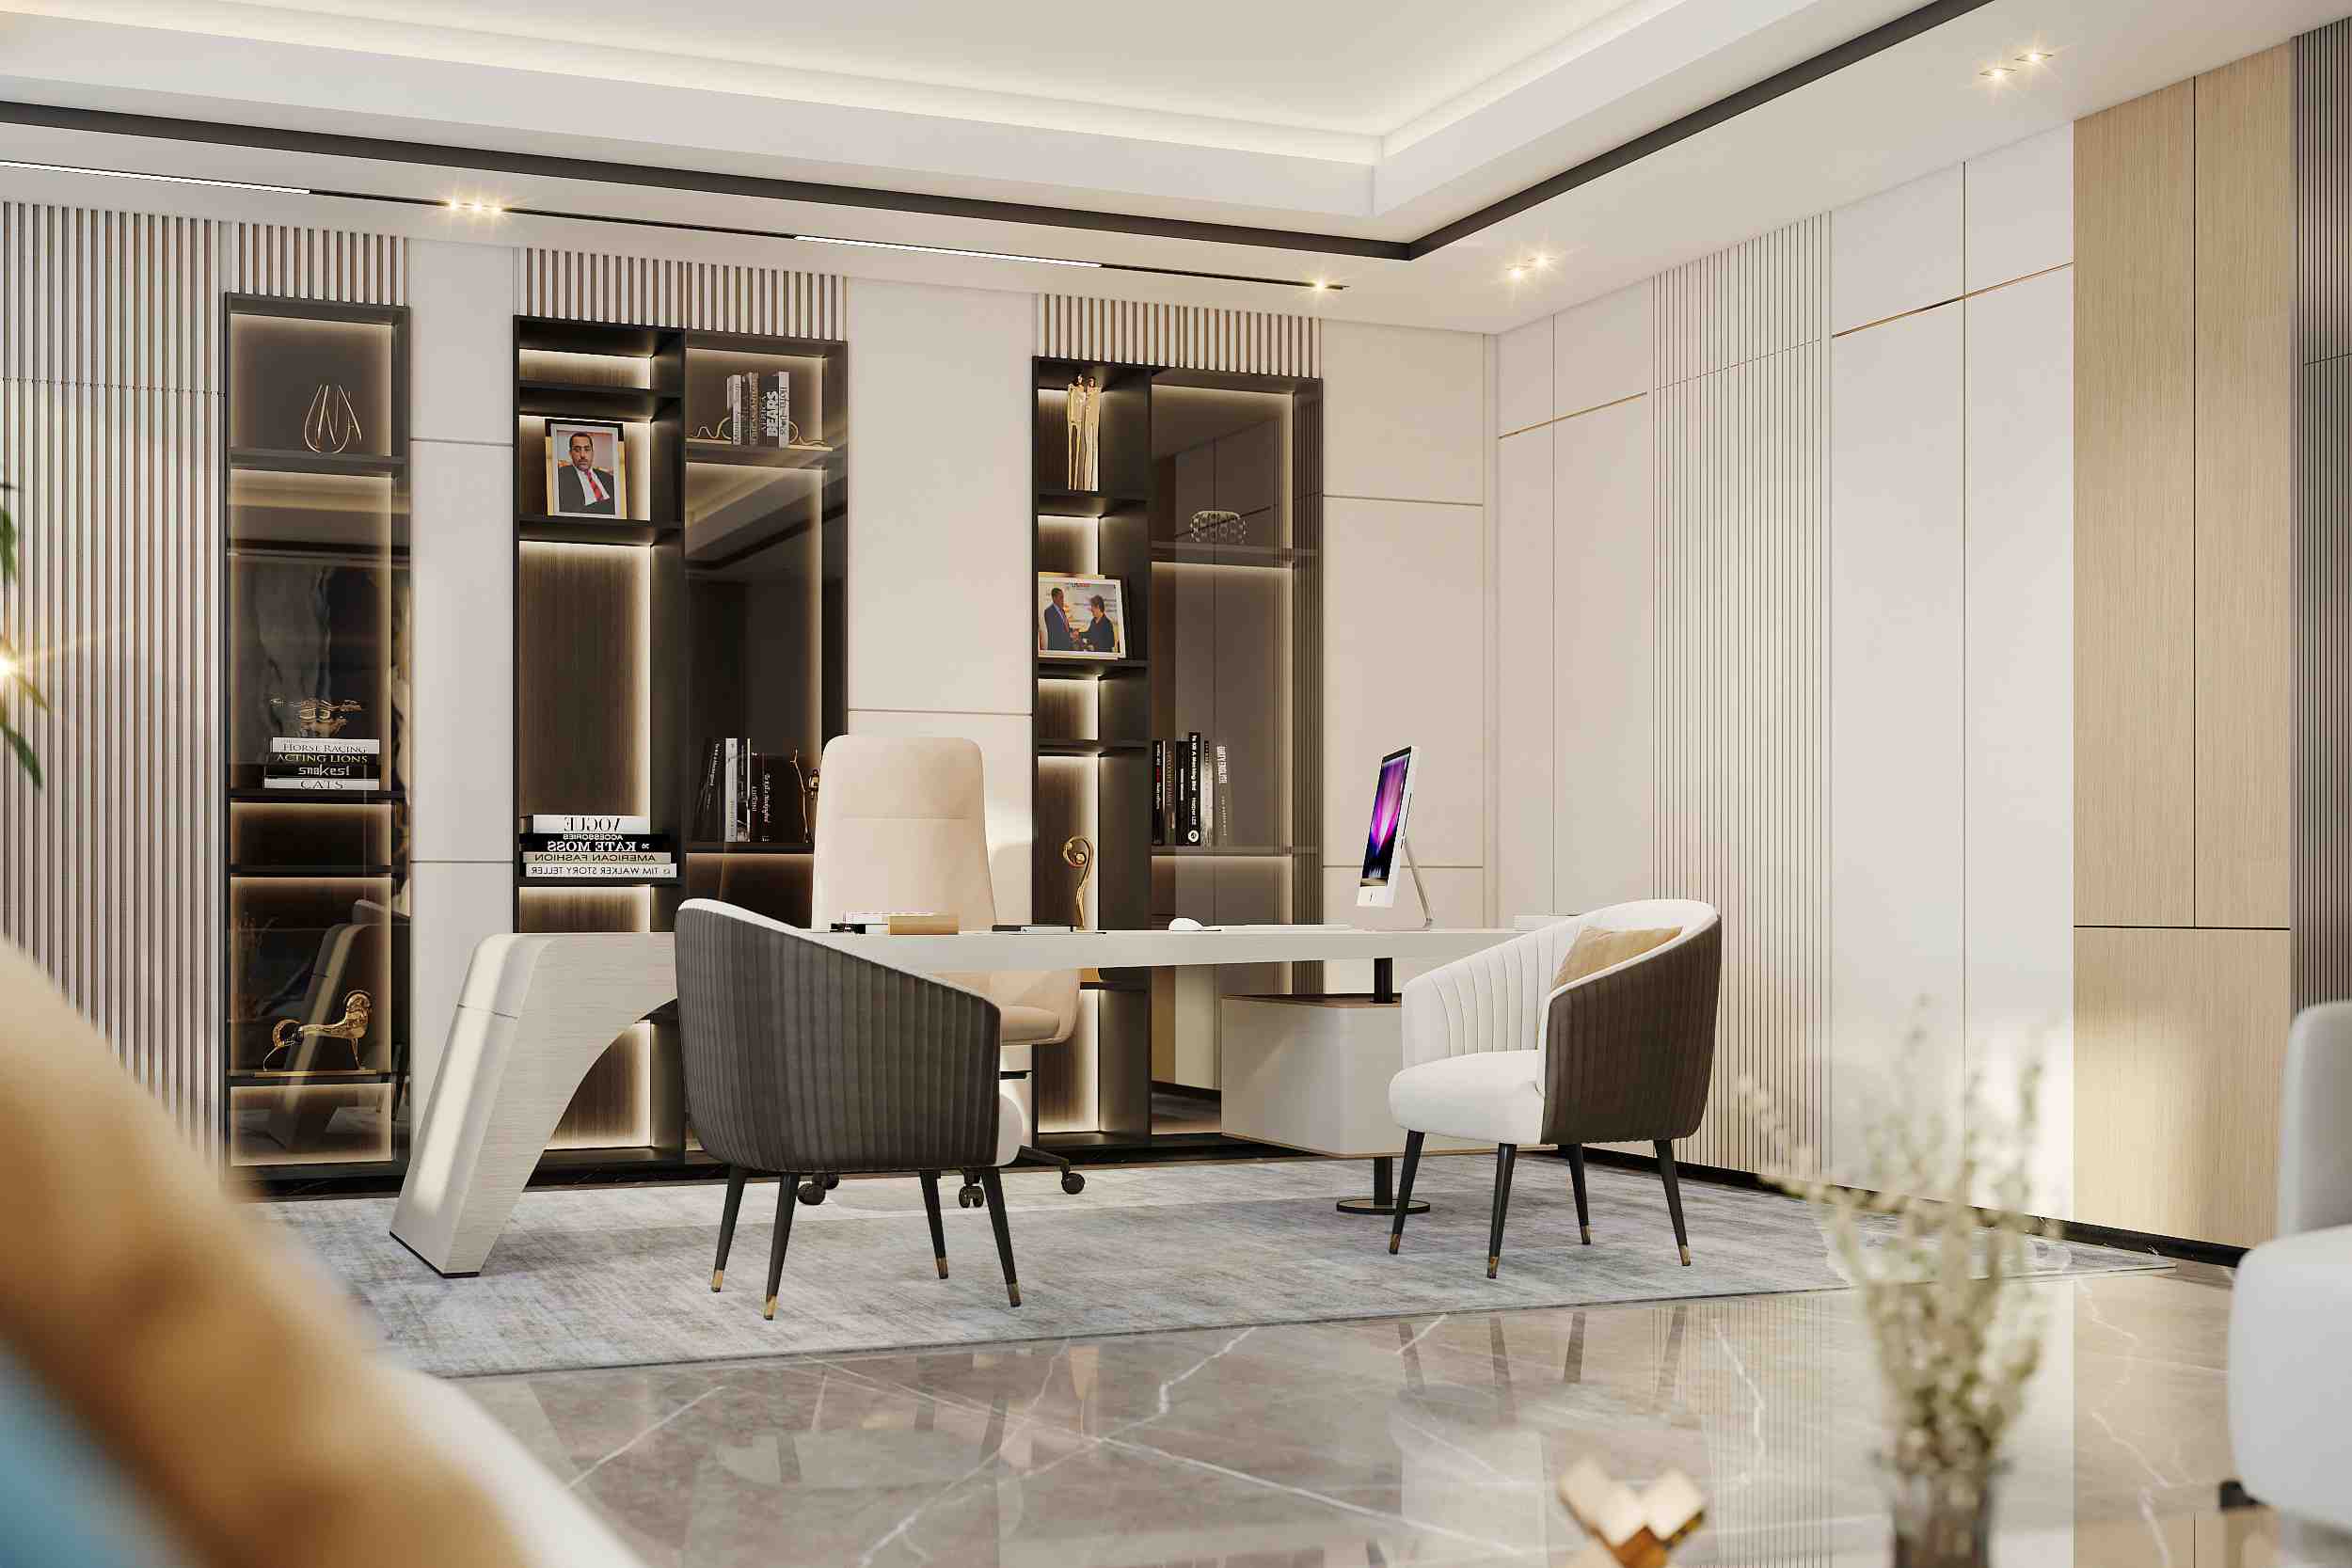 Offices - Spazio Interior Design & Fit Out Company - Dubai